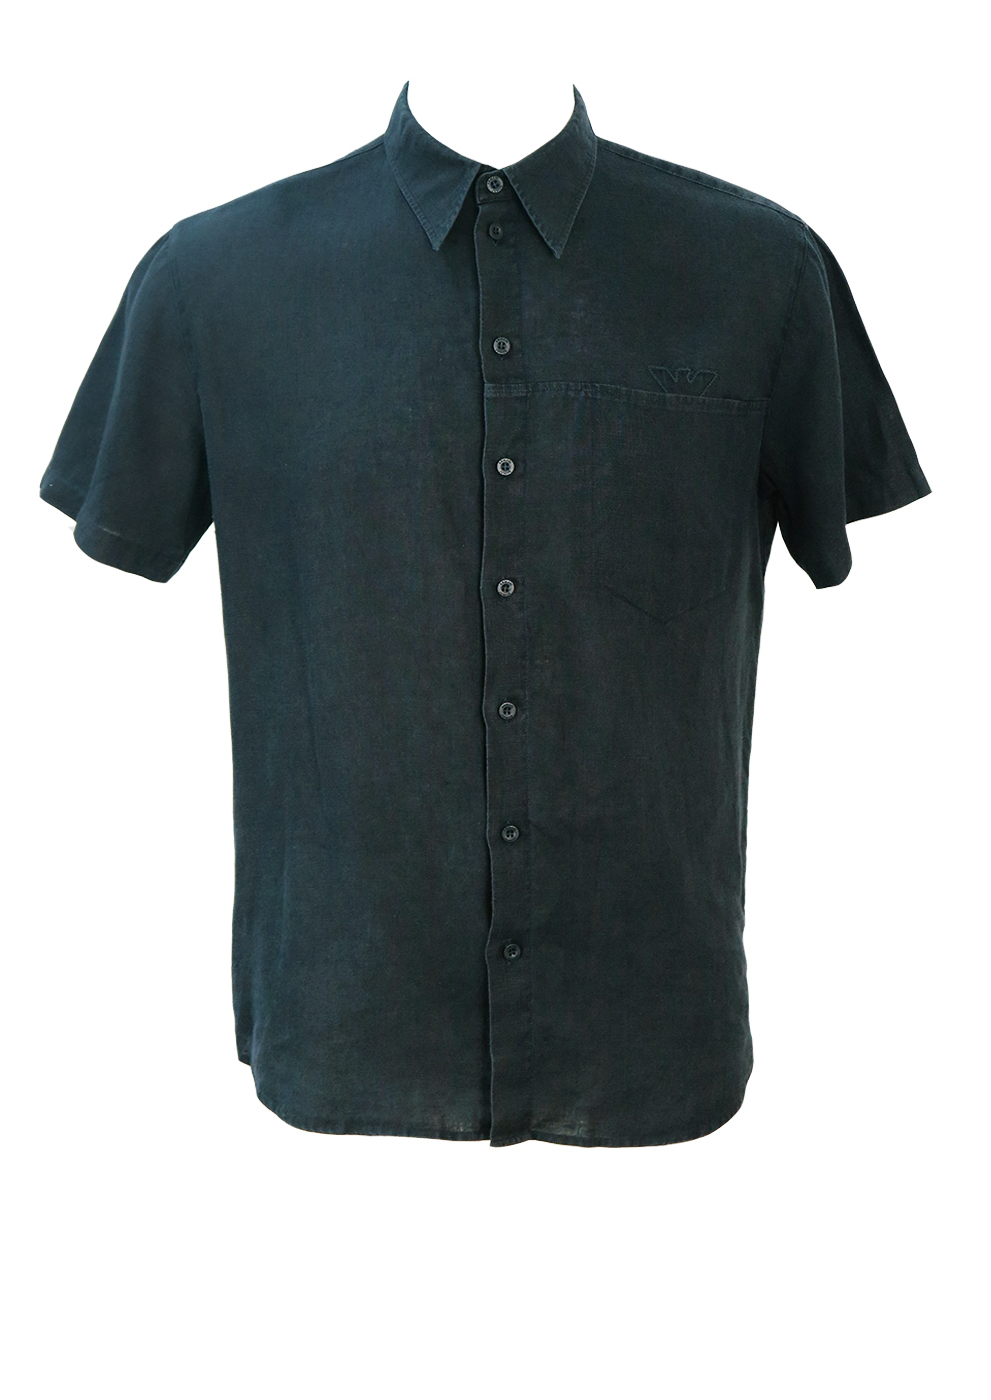 Armani Black Linen Short Sleeved Shirt - M | Reign Vintage